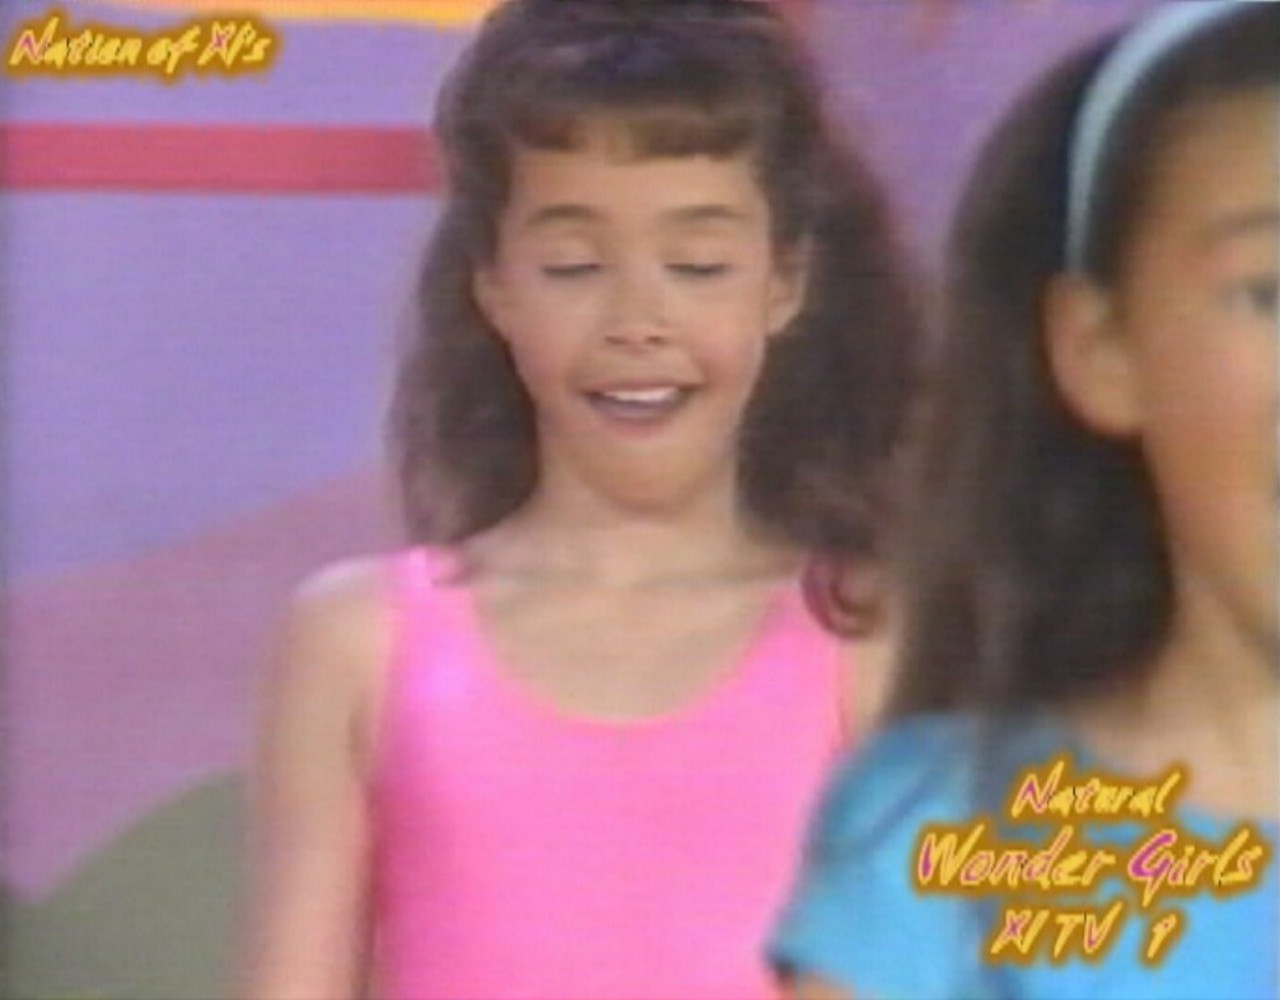 Natural Wonder Girls! Dance Workout! "Barbie Gets Nine Inch Nailed!"